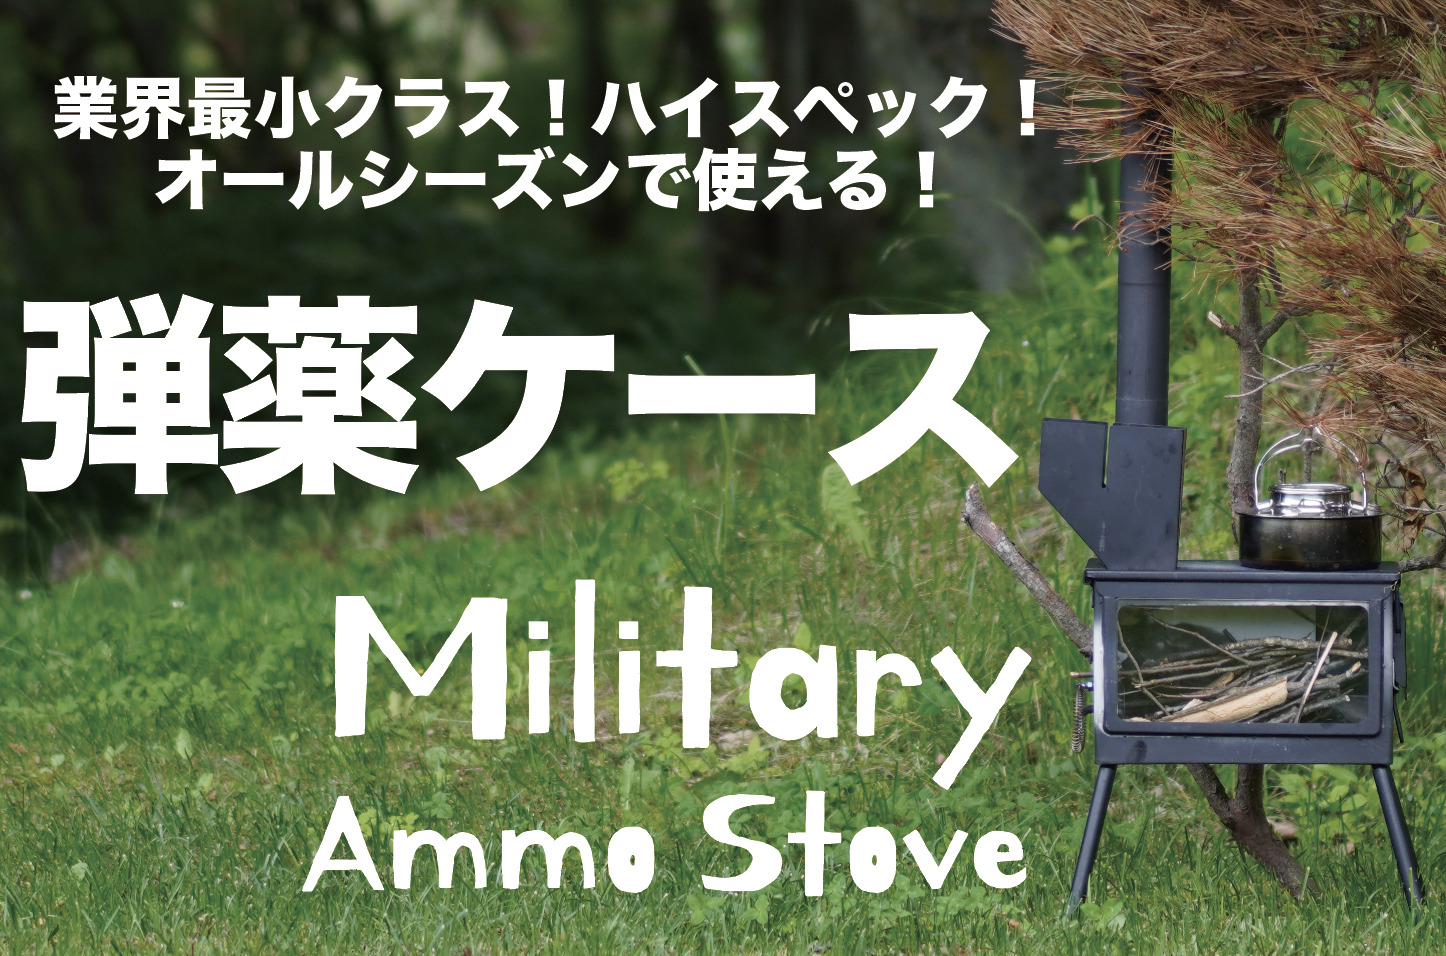 ロケットストーブ「Ammo stove standard」